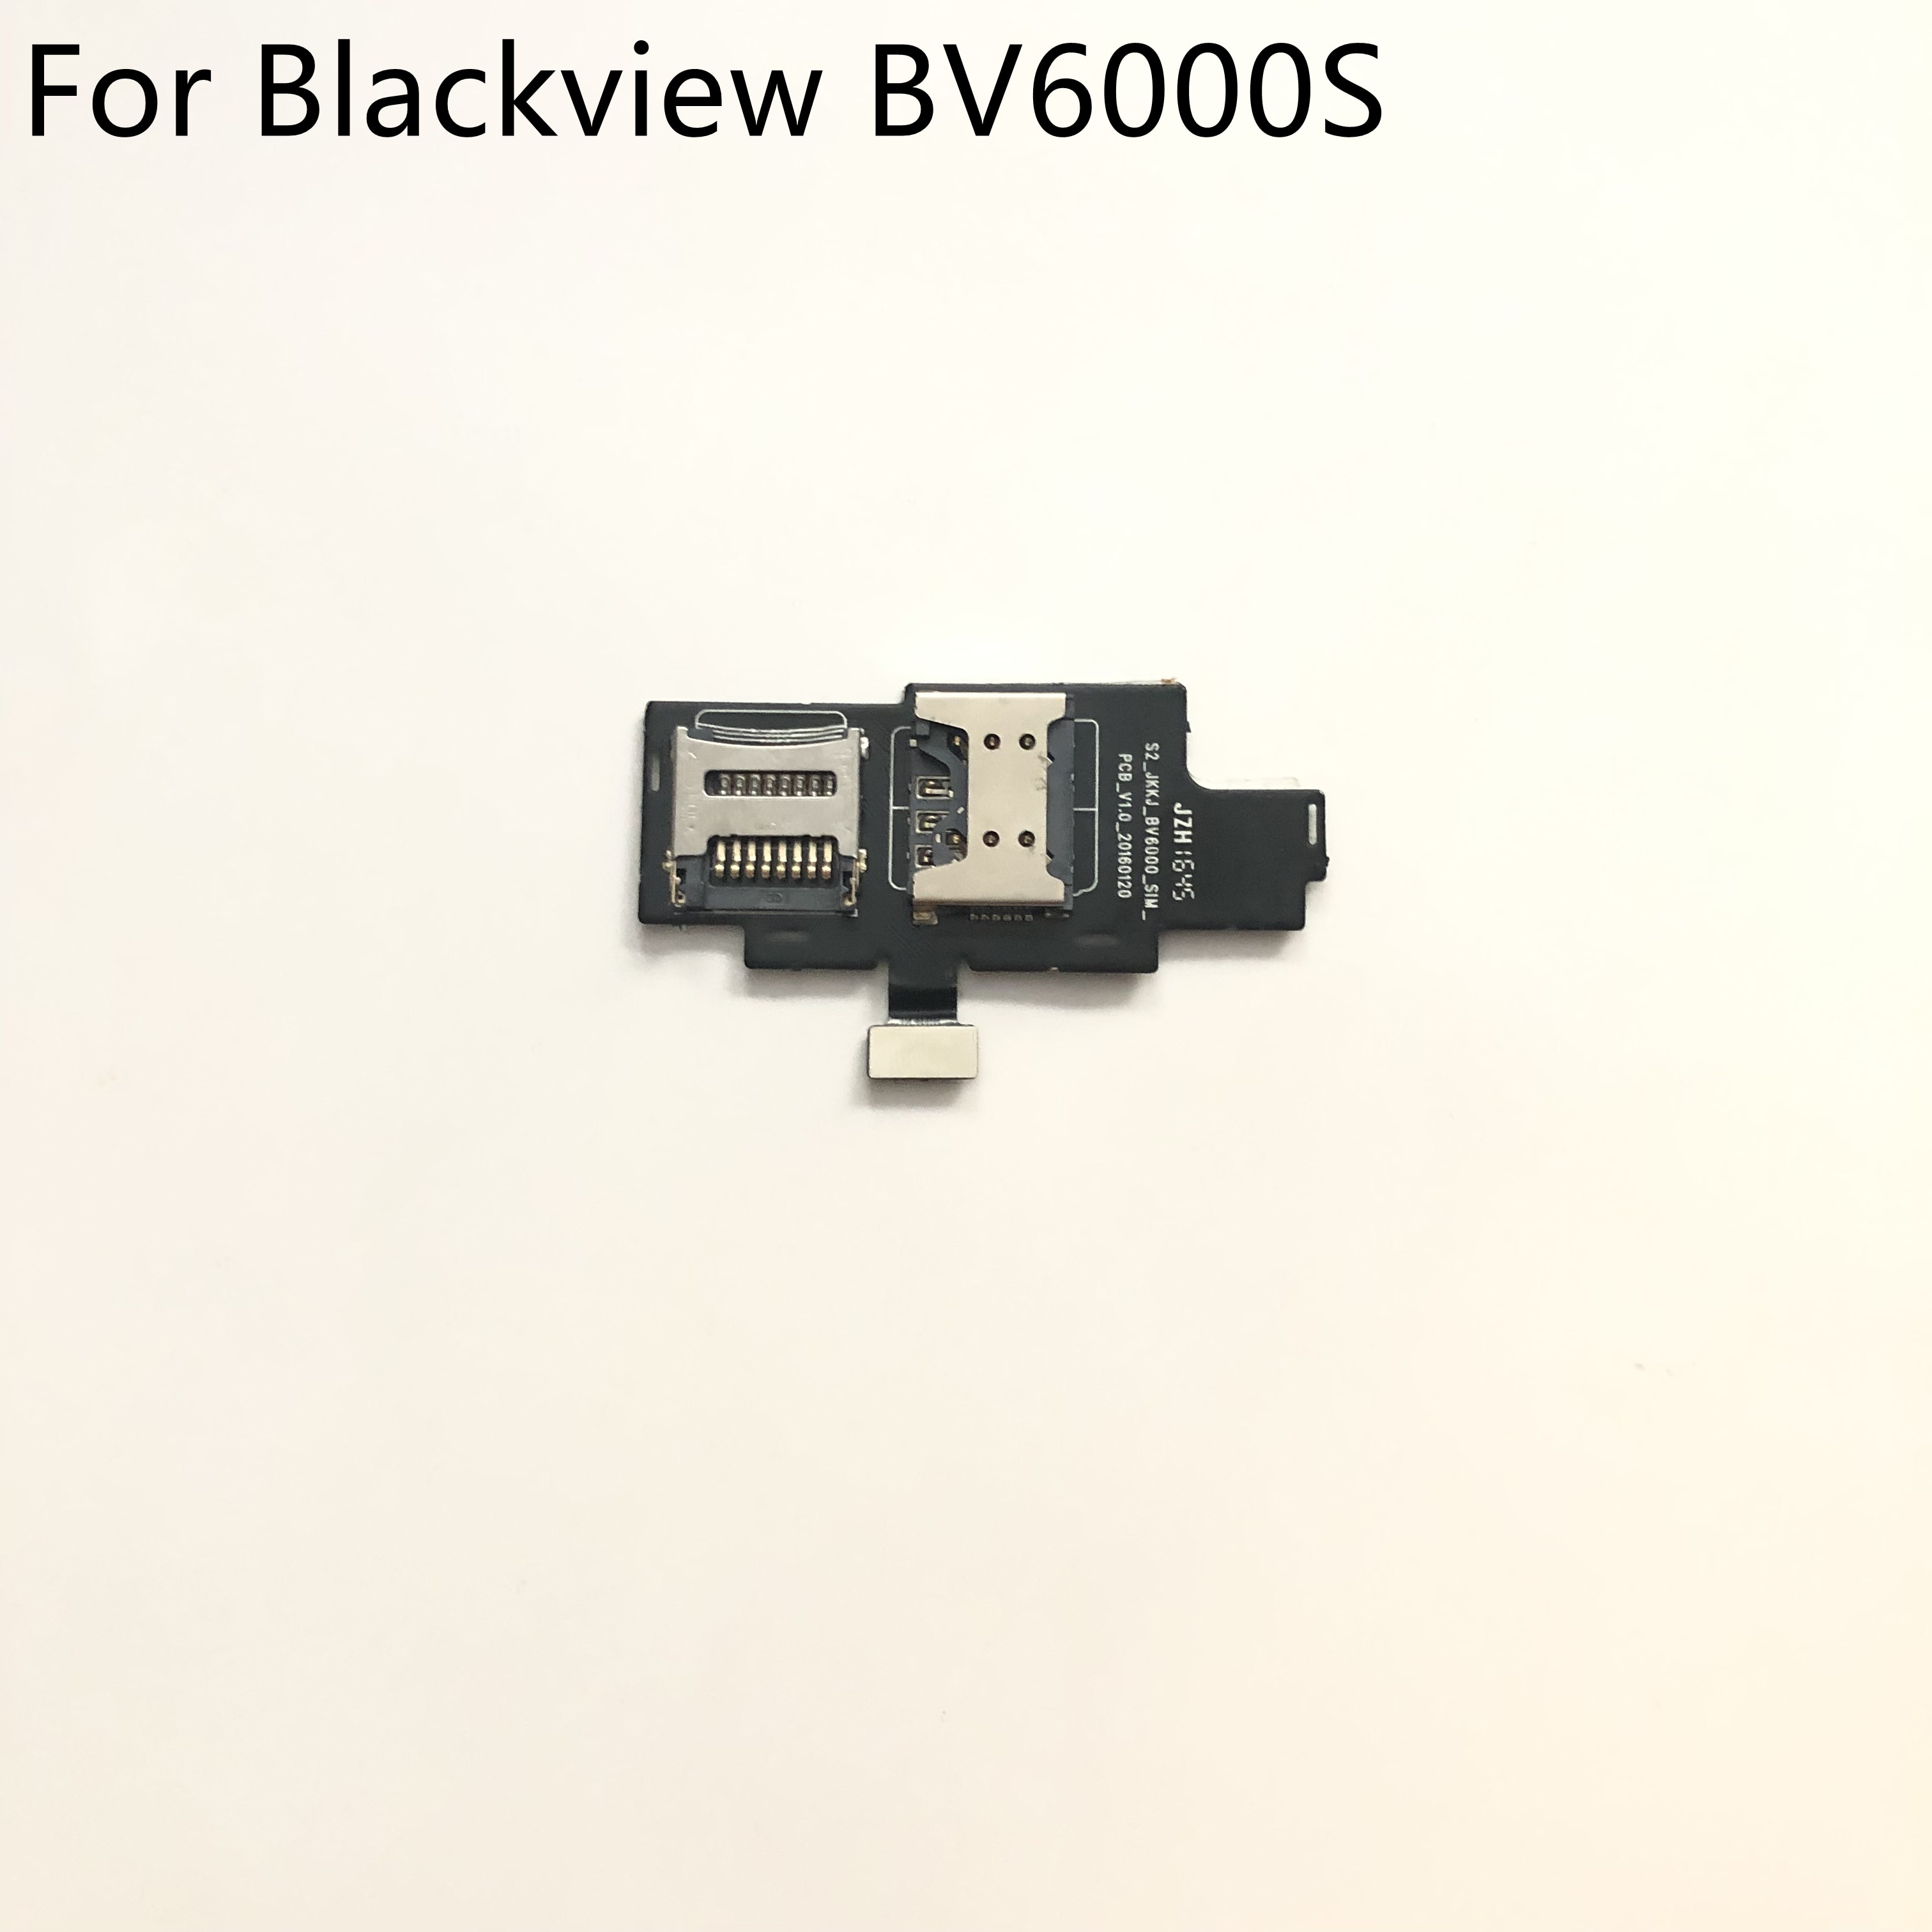 Blackview BV6000S SIM Kaartlezer Houder Connector Voor Blackview BV6000S MT6737T 4.7inch HD 1280*720 Smartphone